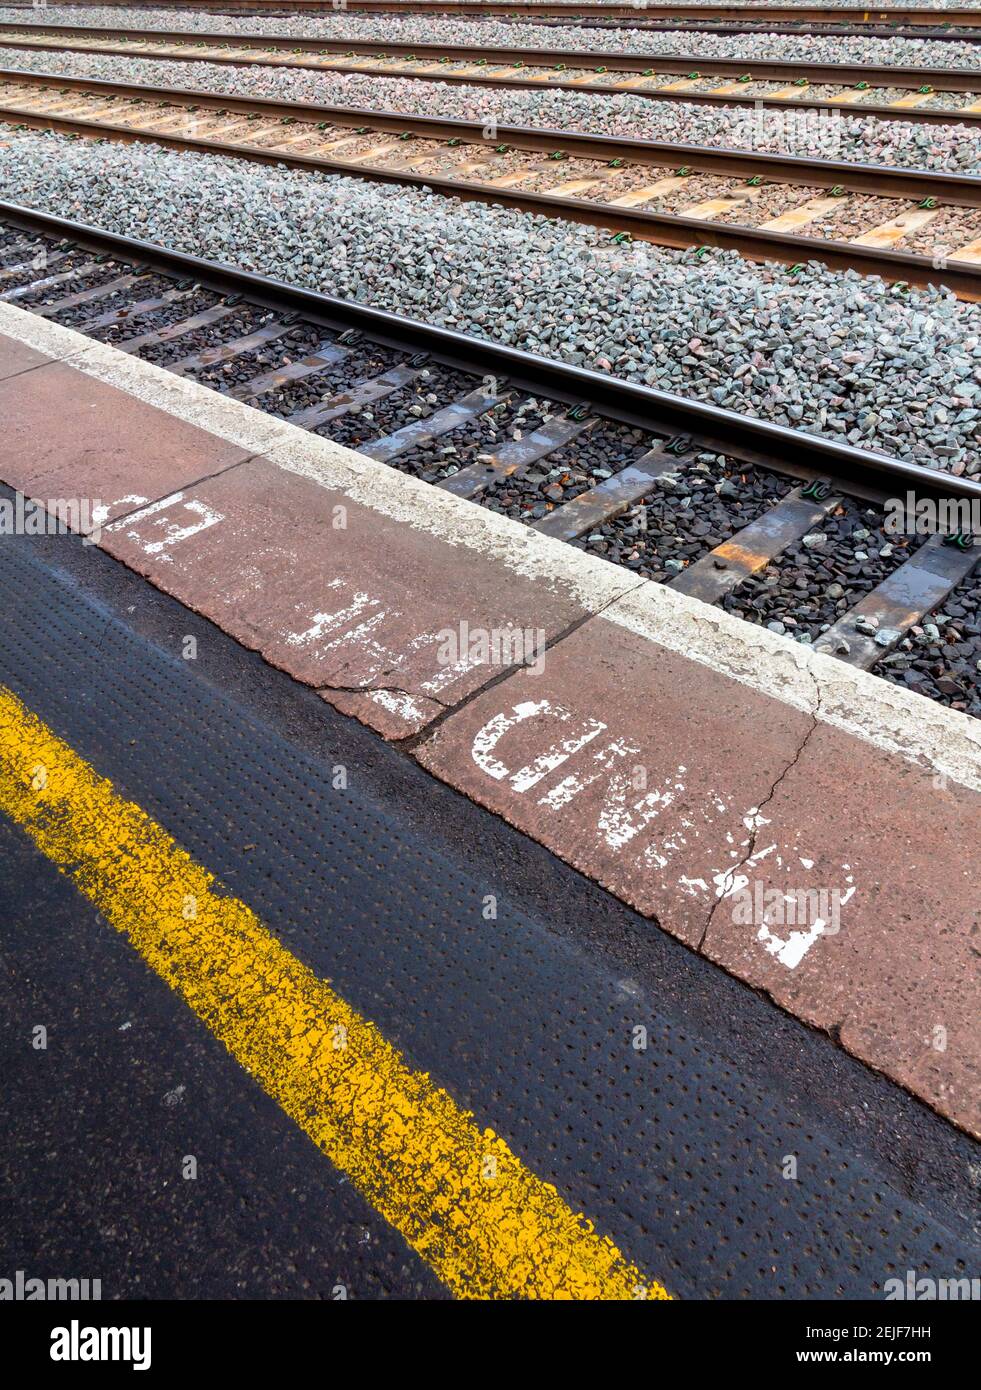 Une bande d'avertissement jaune et une note de passage sur la plate-forme de la gare du Royaume-Uni avec des voies ferrées en arrière-plan. Banque D'Images